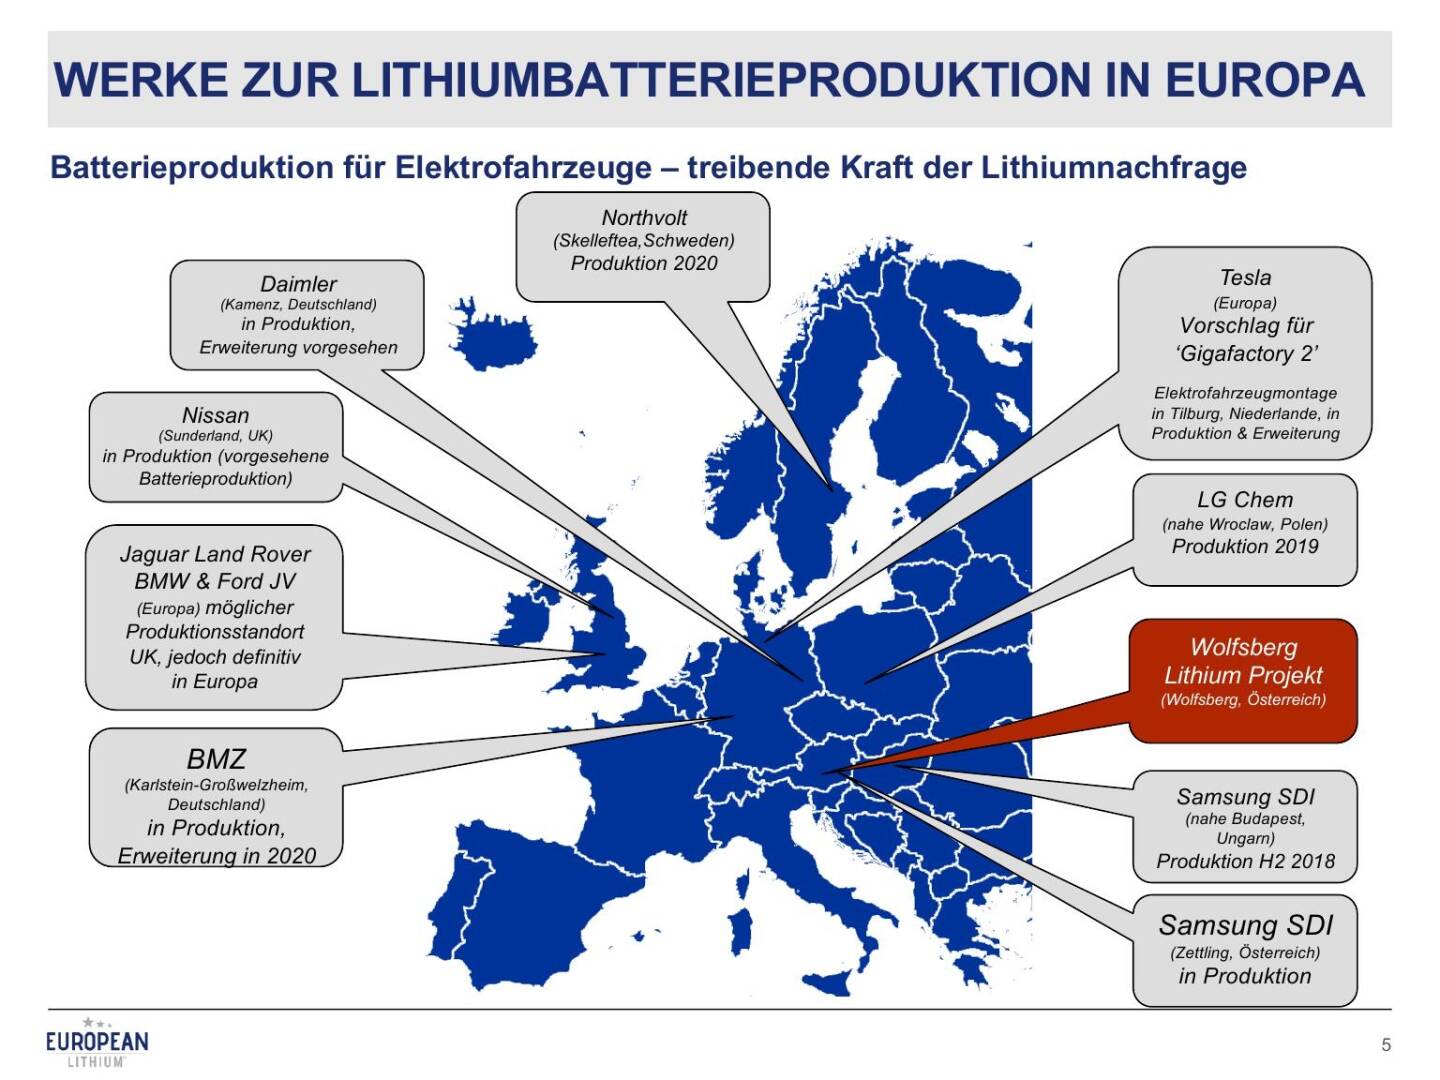 Präsentation European Lithium - Werke zur Lithiumbatterieproduktion